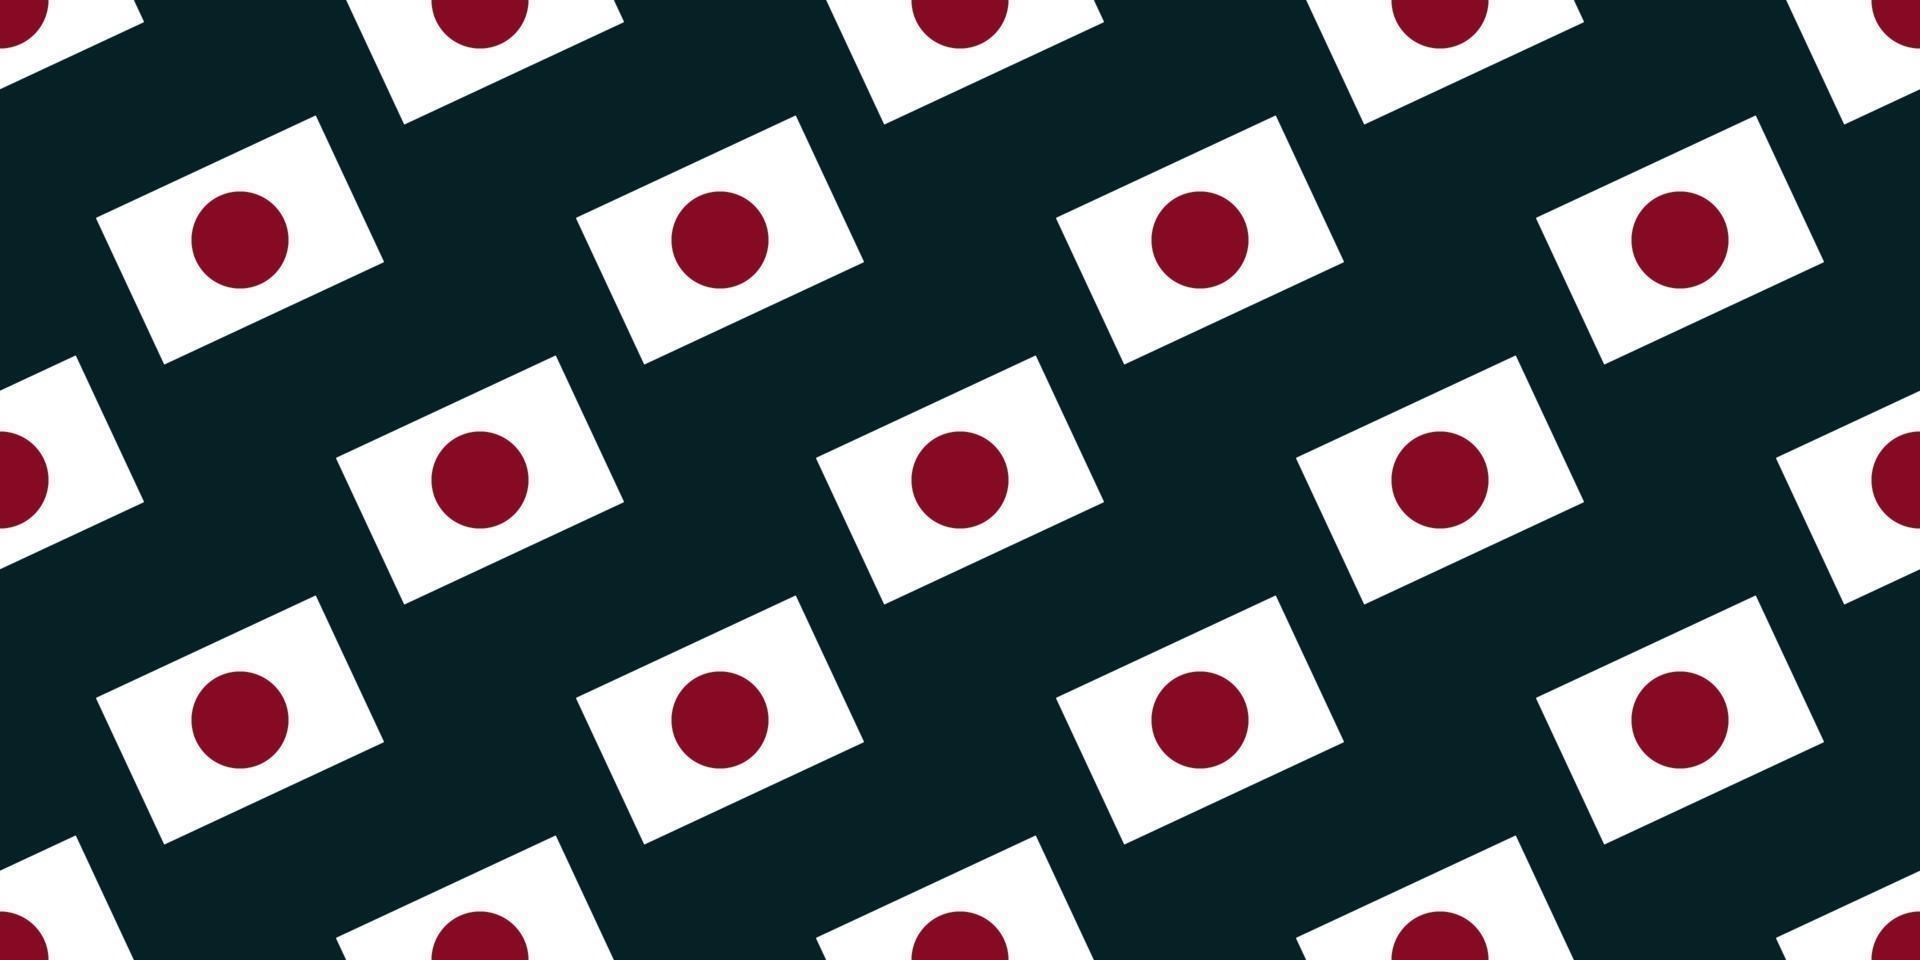 padrão sem emenda da bandeira do Japão em fundo escuro. vetor